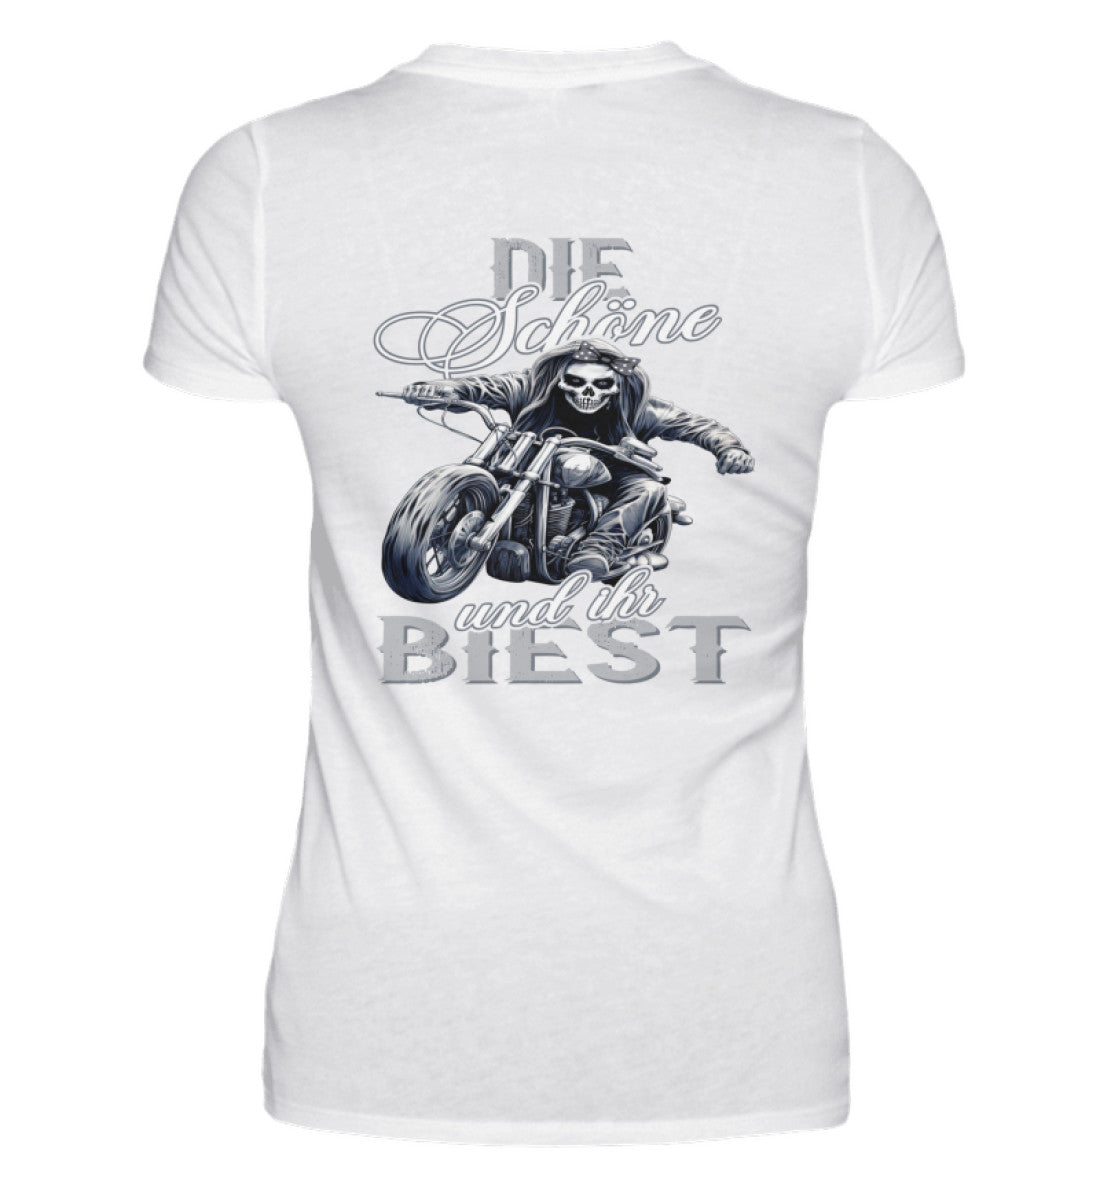 Ein Bikerin T-Shirt für Motorradfahrerinnen von Wingbikers mit dem Aufdruck, Die Schöne und ihr Biest - mit Back Print, in weiß.